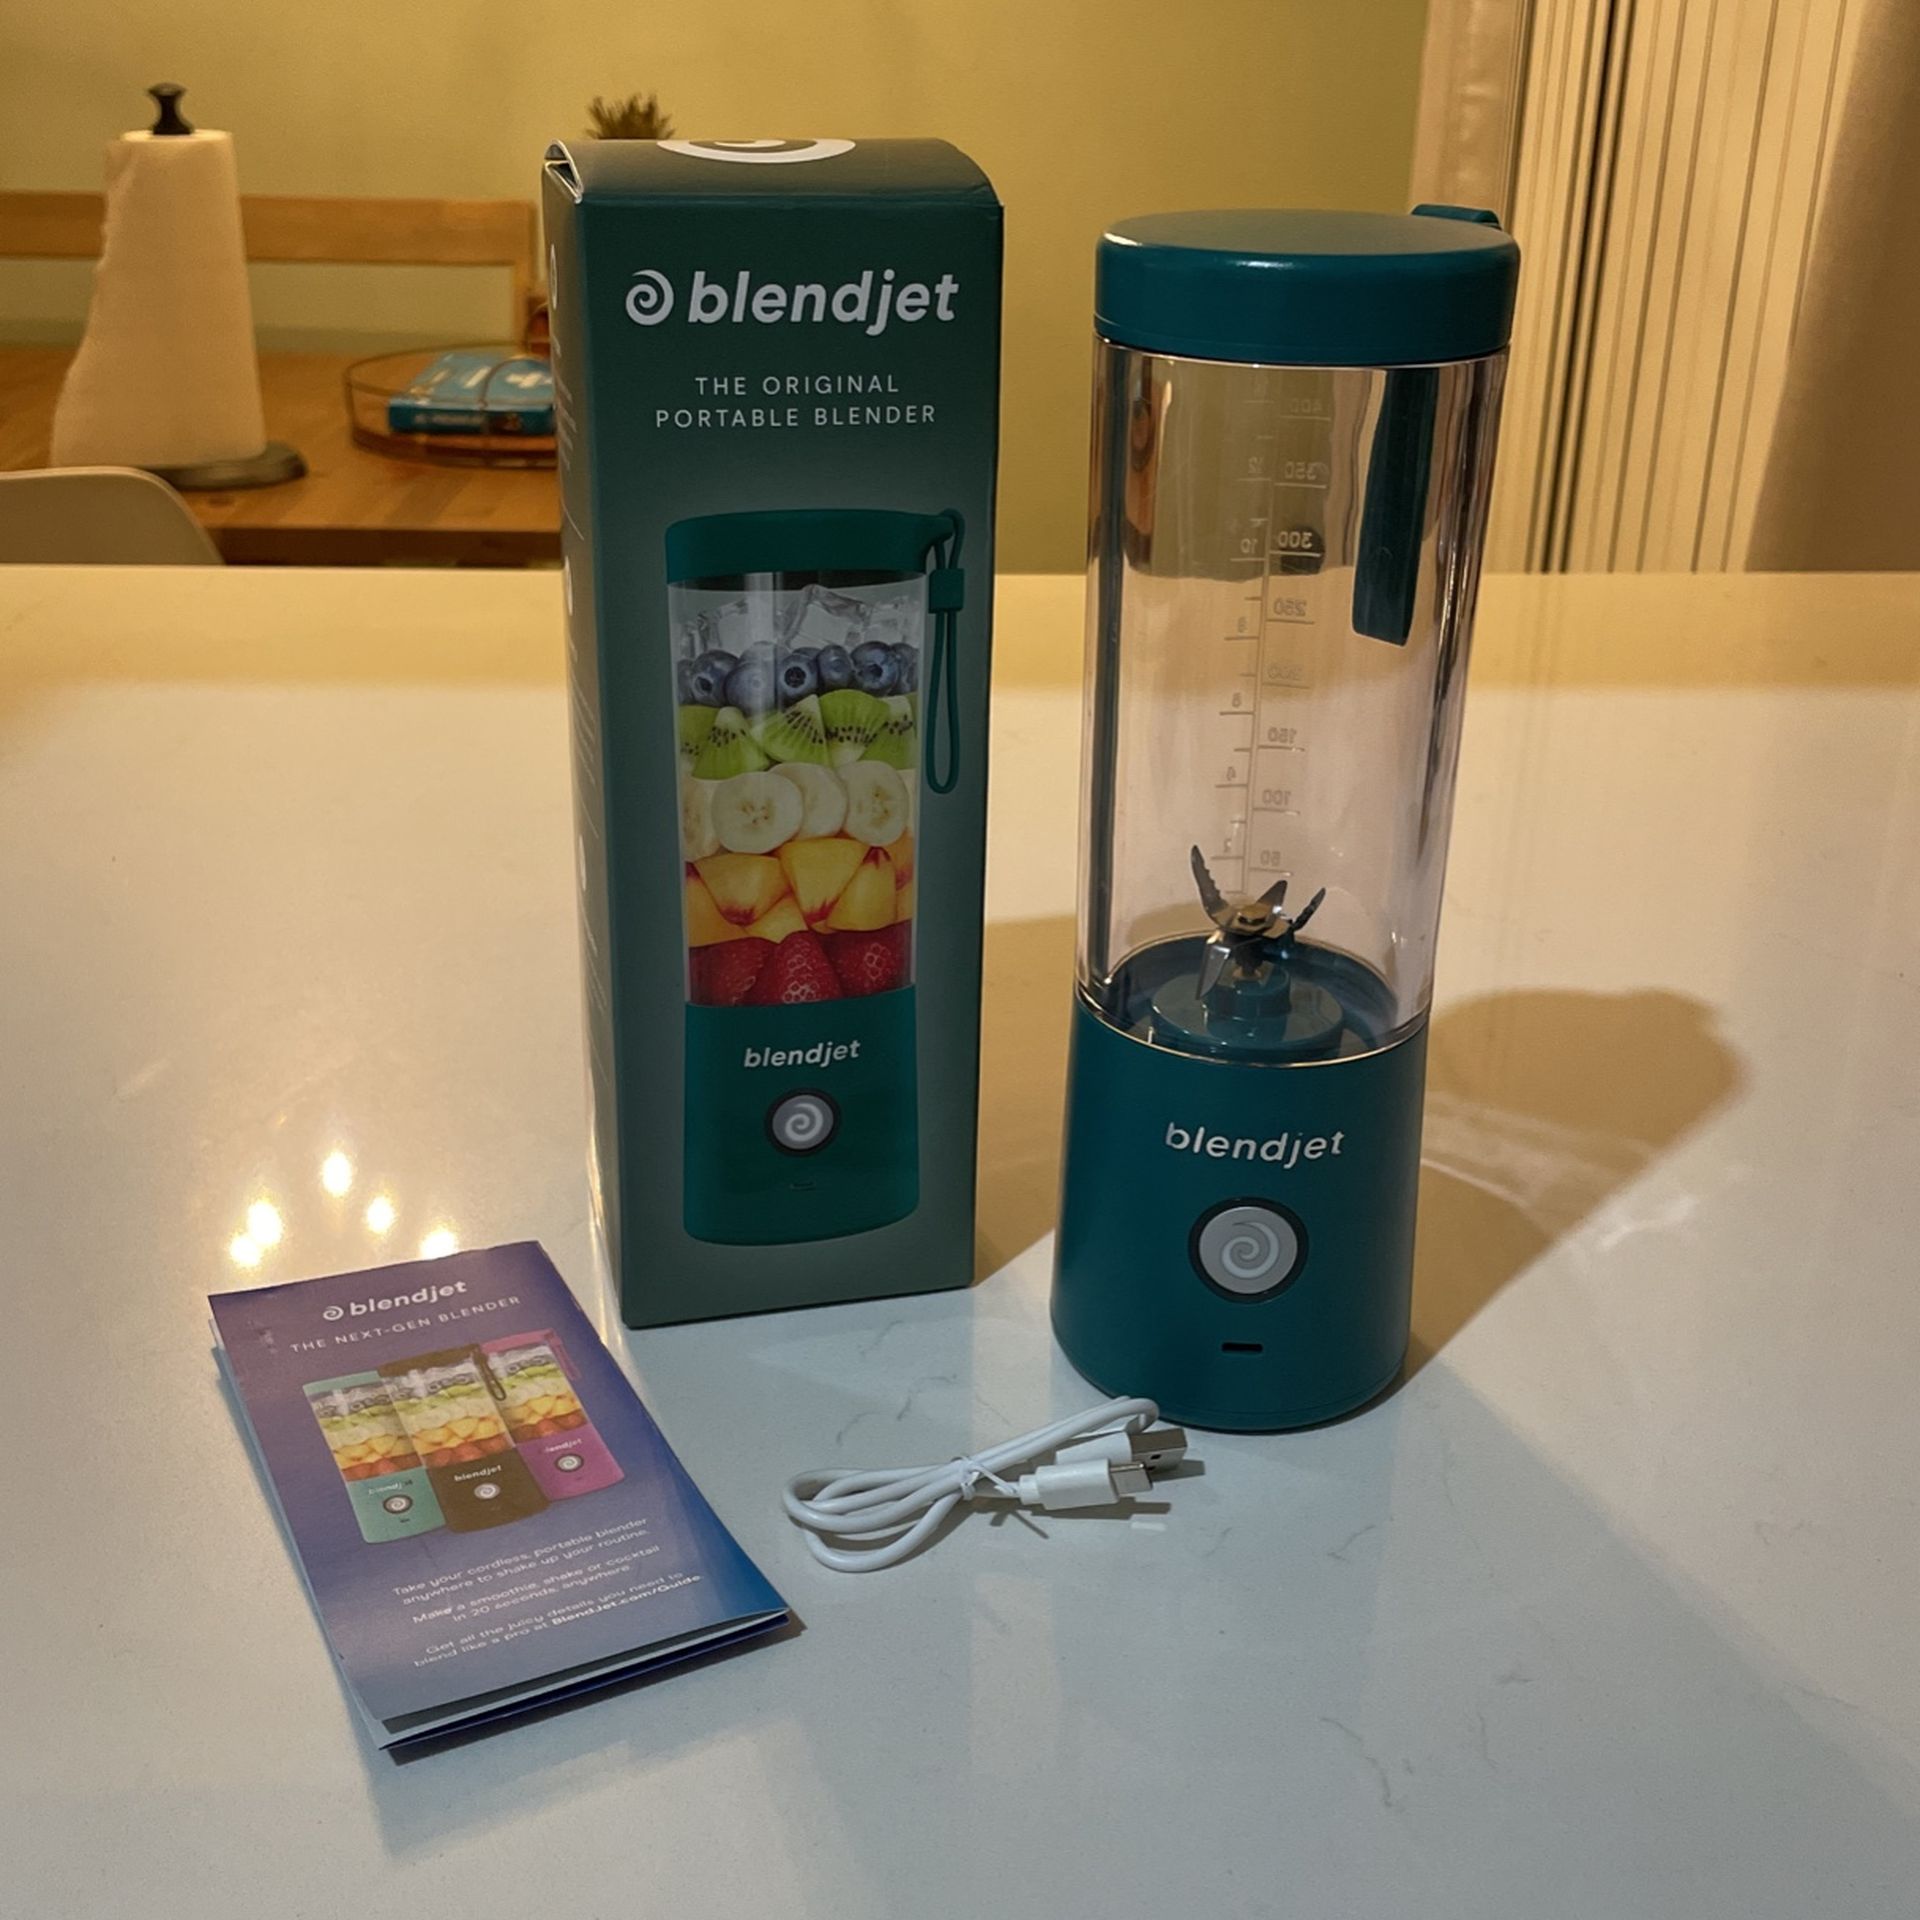 Blend Portable Blender Jet, Portable Blender For Shakes And